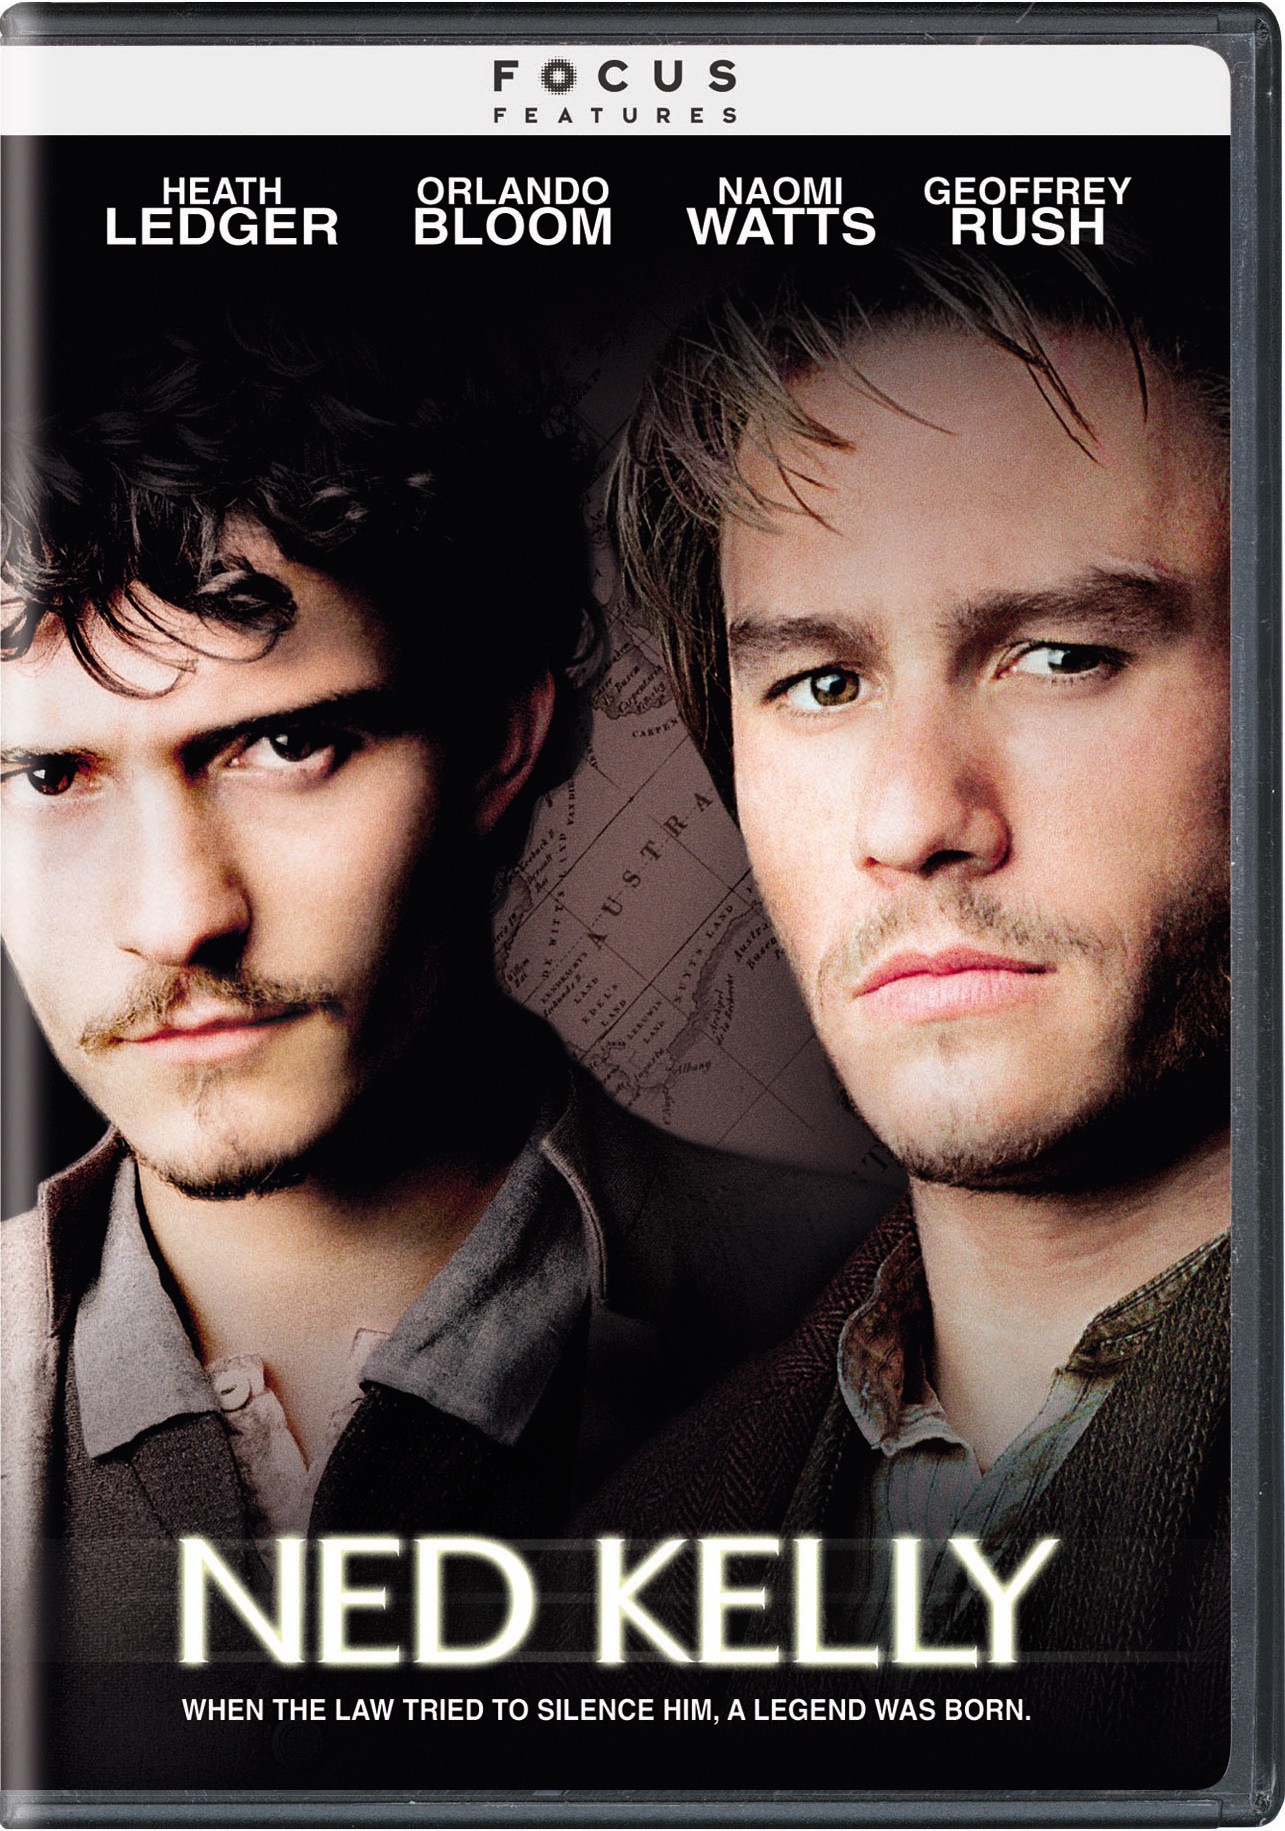 Ned Kelly - DVD [ 2004 ]  - Drama Movies On DVD - Movies On GRUV